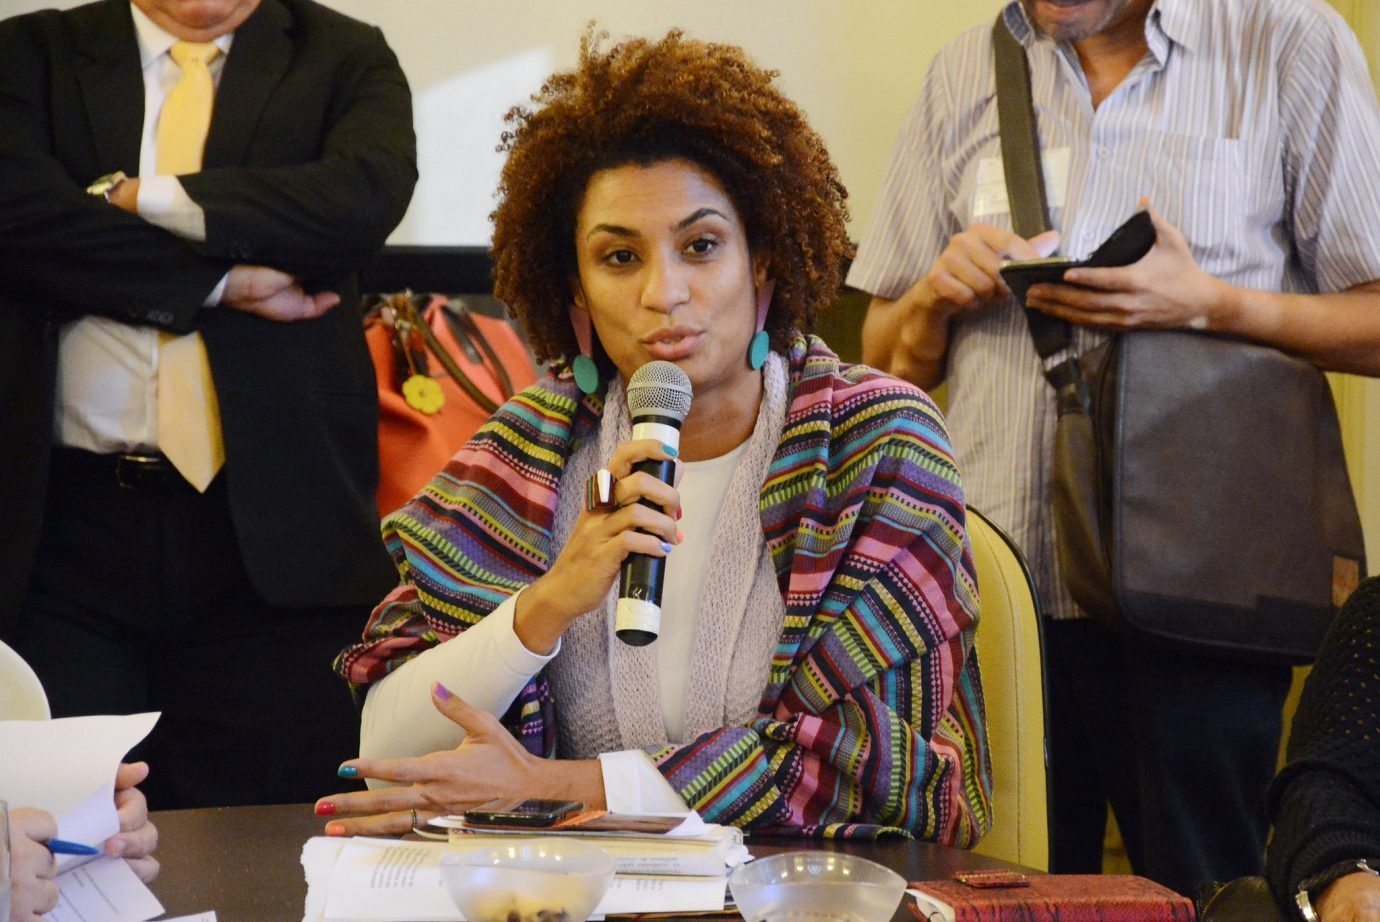 A vereadora Marielle Franco, do PSOL, assassinada no Rio de Janeiro